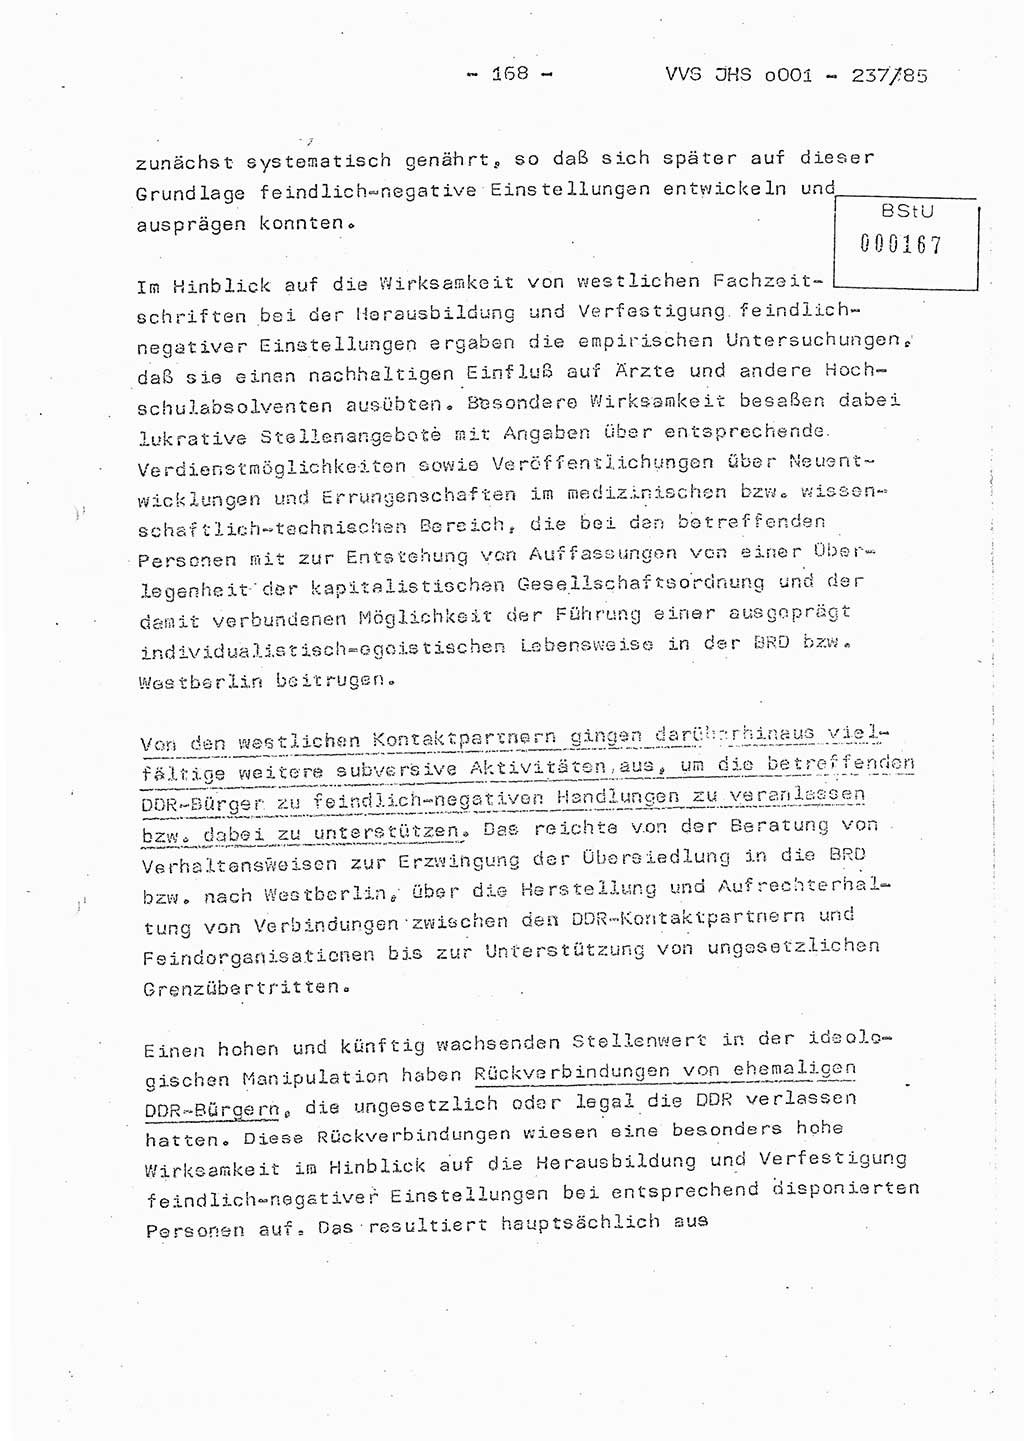 Dissertation Oberstleutnant Peter Jakulski (JHS), Oberstleutnat Christian Rudolph (HA Ⅸ), Major Horst Böttger (ZMD), Major Wolfgang Grüneberg (JHS), Major Albert Meutsch (JHS), Ministerium für Staatssicherheit (MfS) [Deutsche Demokratische Republik (DDR)], Juristische Hochschule (JHS), Vertrauliche Verschlußsache (VVS) o001-237/85, Potsdam 1985, Seite 168 (Diss. MfS DDR JHS VVS o001-237/85 1985, S. 168)